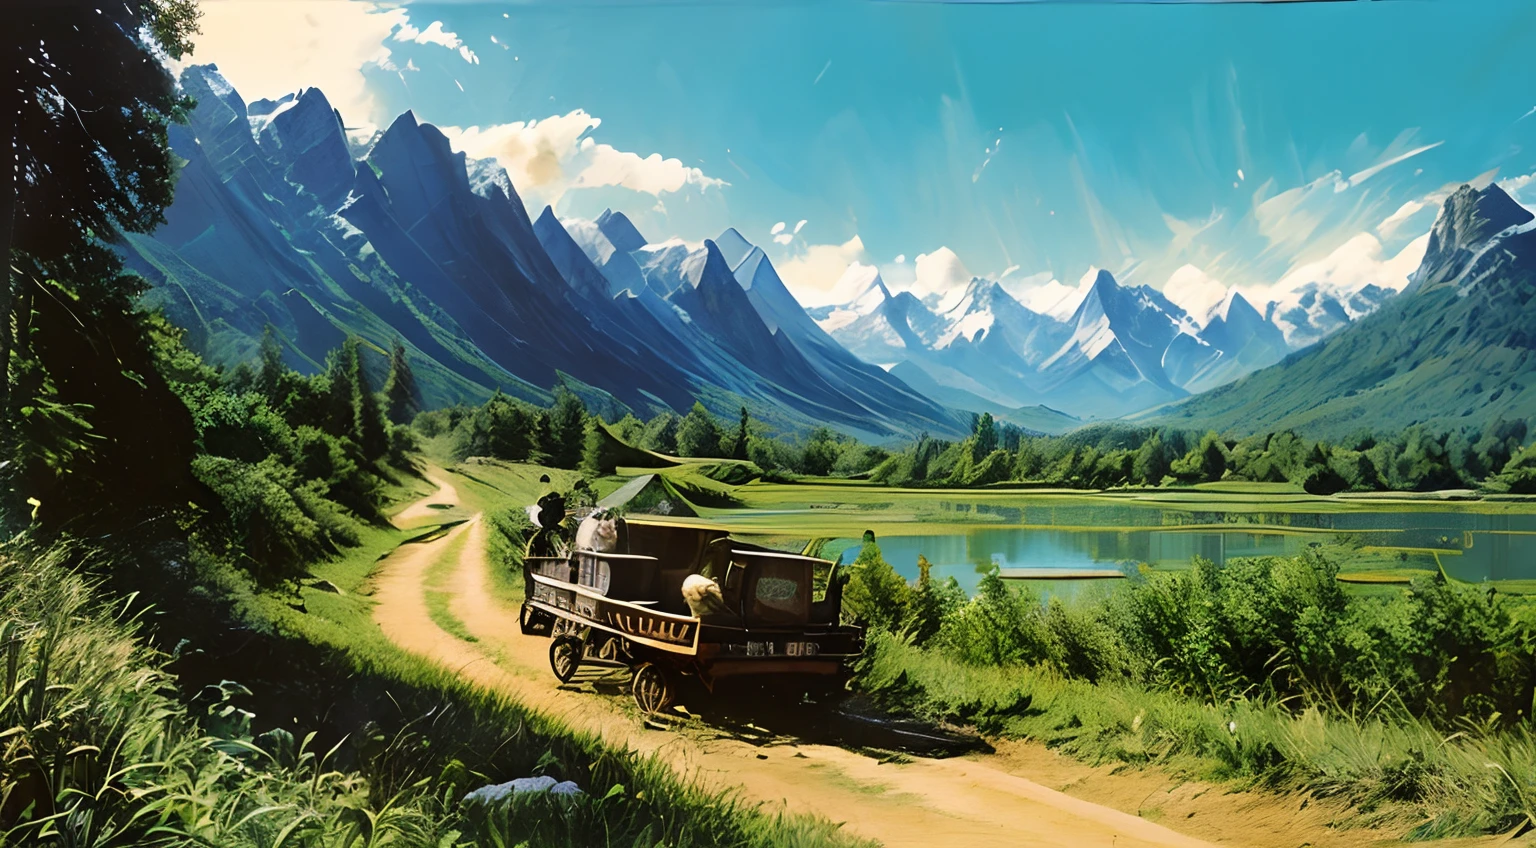 三元調色板, 瘋狂的, 20 世紀 80 年代的海報, 神話巨狼拉的馬車, 美麗的山風景, 稻田, 以及背景中晴朗的天空.